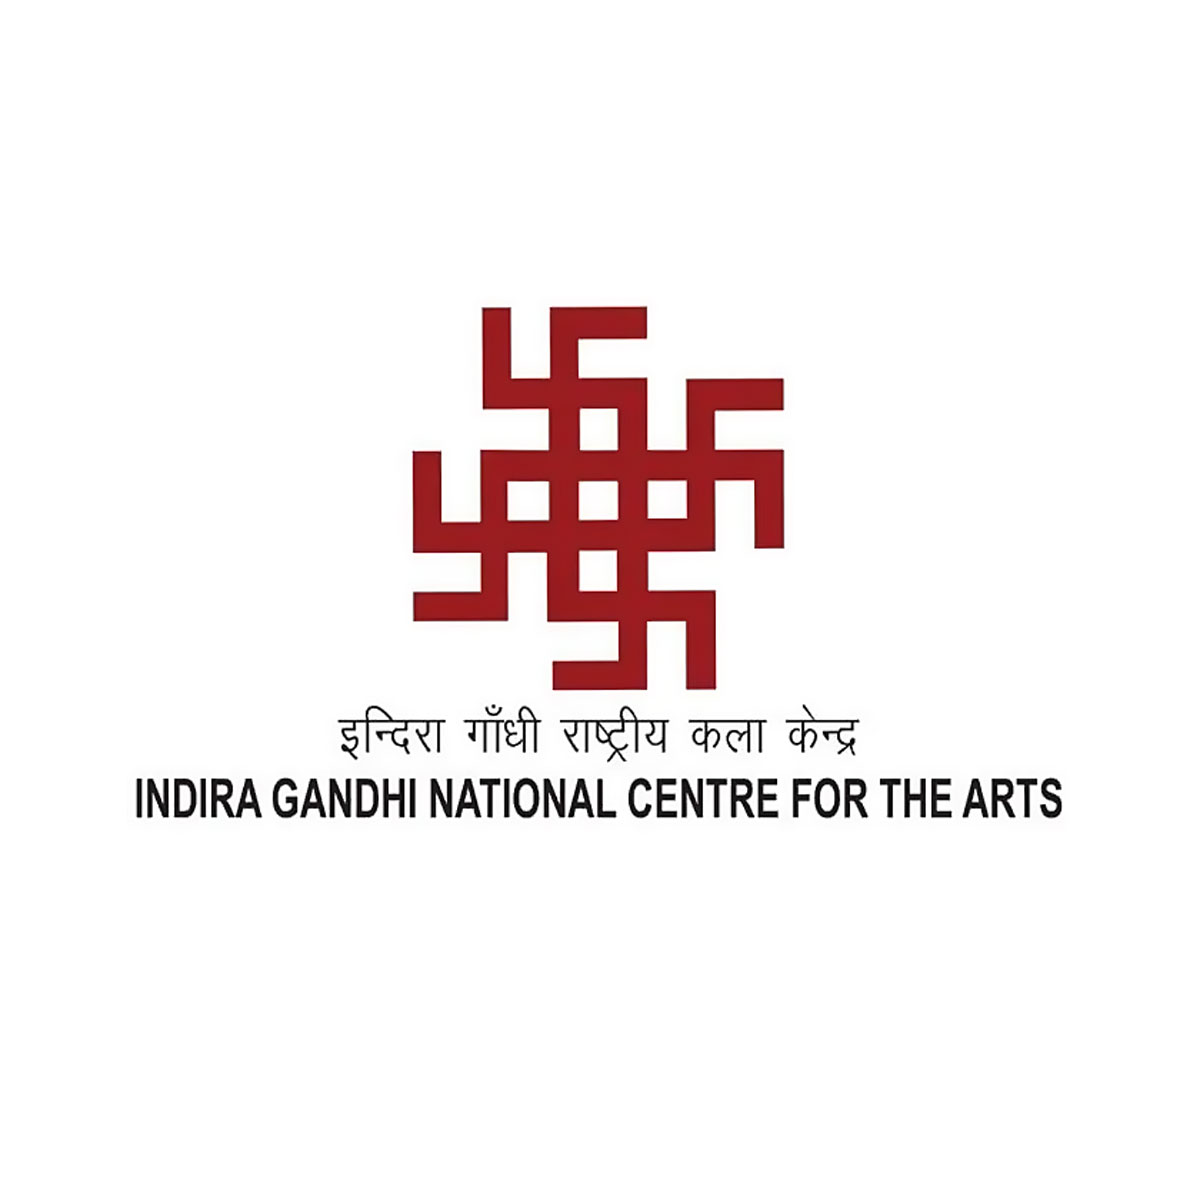 Ignca Project Assistant Recruitment - Indira Gandhi National Centre For The Arts Job Vacancies